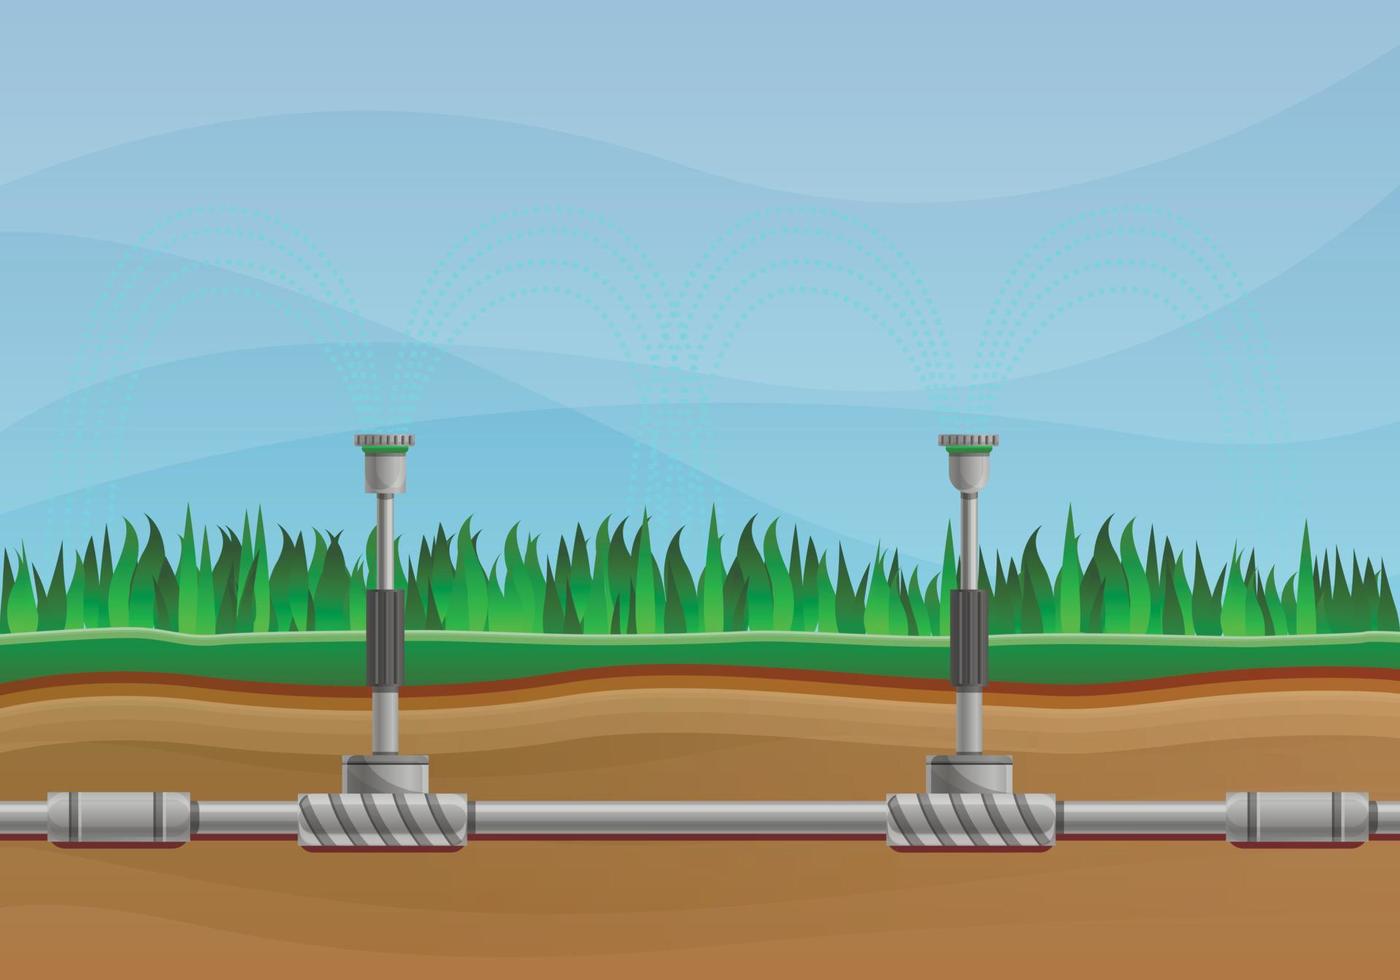 banner de conceito de sistema de irrigação, estilo cartoon vetor